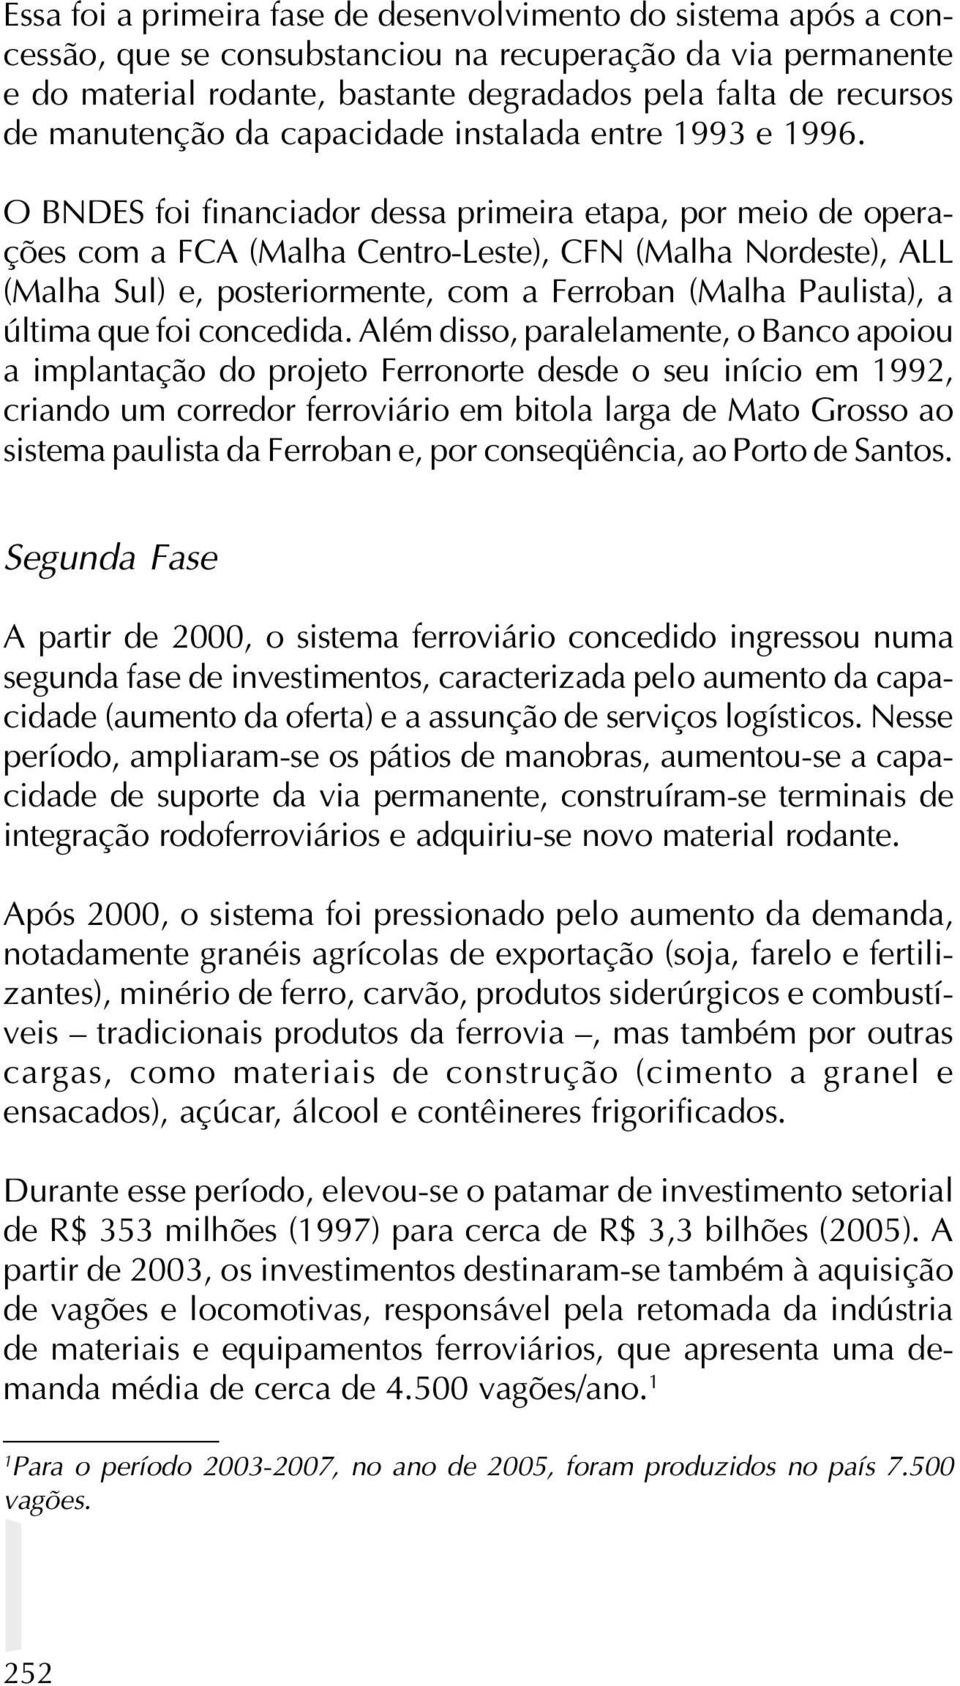 O BNDES foi financiador dessa primeira etapa, por meio de operações com a FCA (Malha Centro-Leste), CFN (Malha Nordeste), ALL (Malha Sul) e, posteriormente, com a Ferroban (Malha Paulista), a última